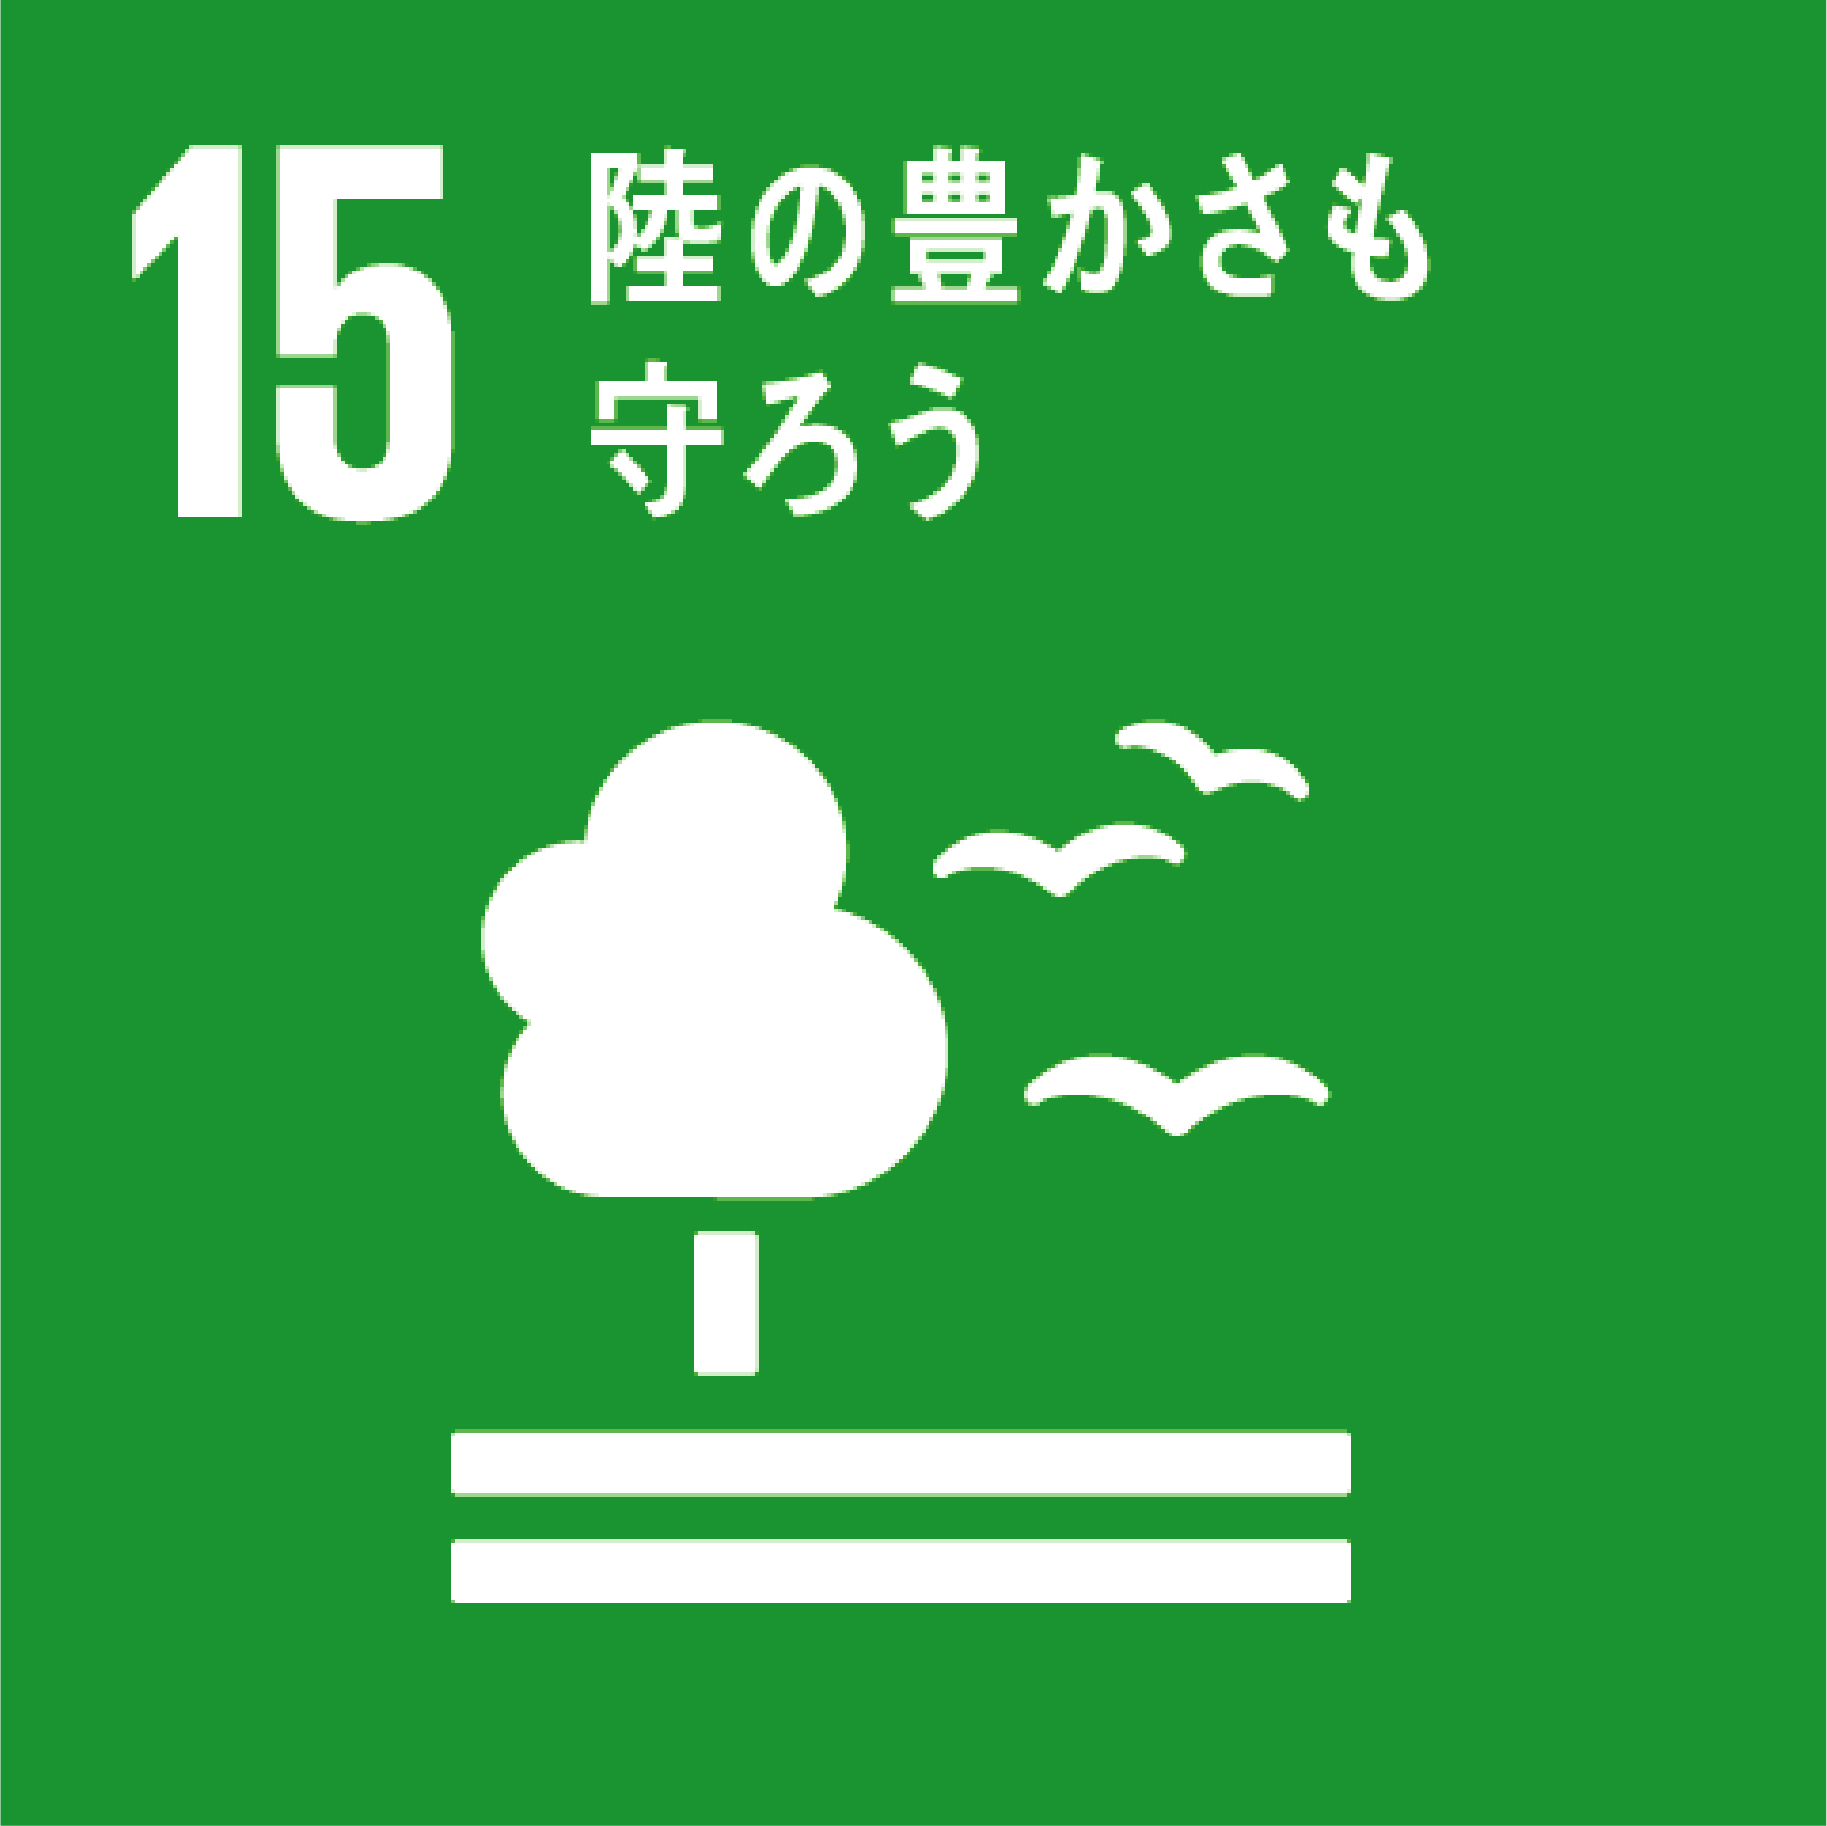 栃木県鹿沼市の造園・植木の施工管理、庭づくりのことならみどり産業のSDGs15